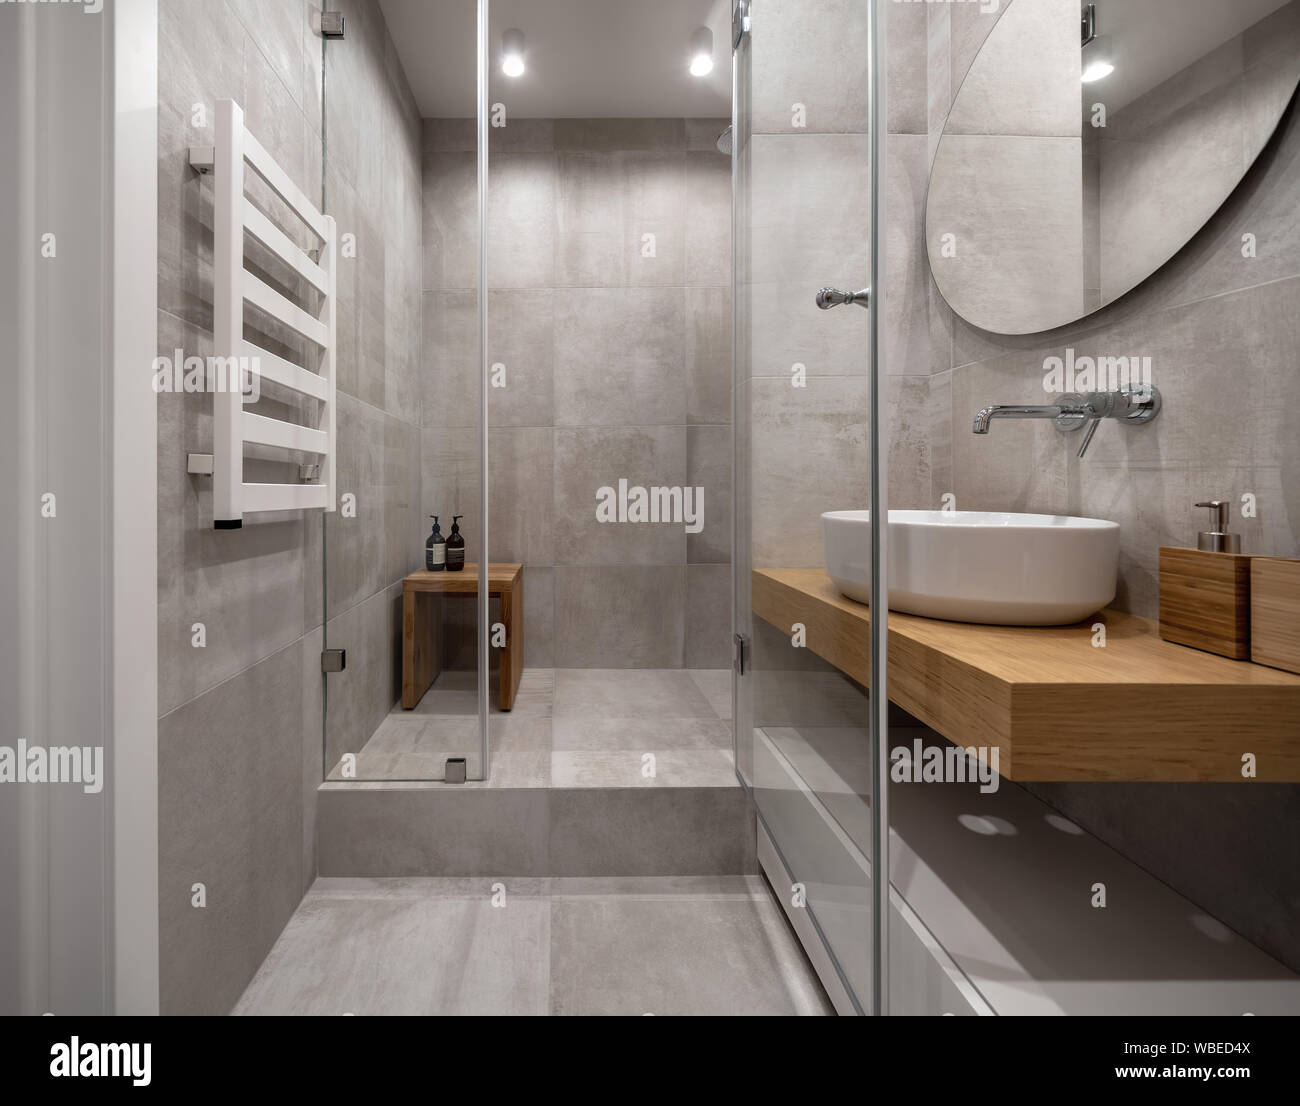 Cuarto de baño en un estilo moderno con paredes de baldosas color beige  texturado y luminosas lámparas. Hay una cabina de ducha de cristal, estante  de madera con un lavabo blanco y